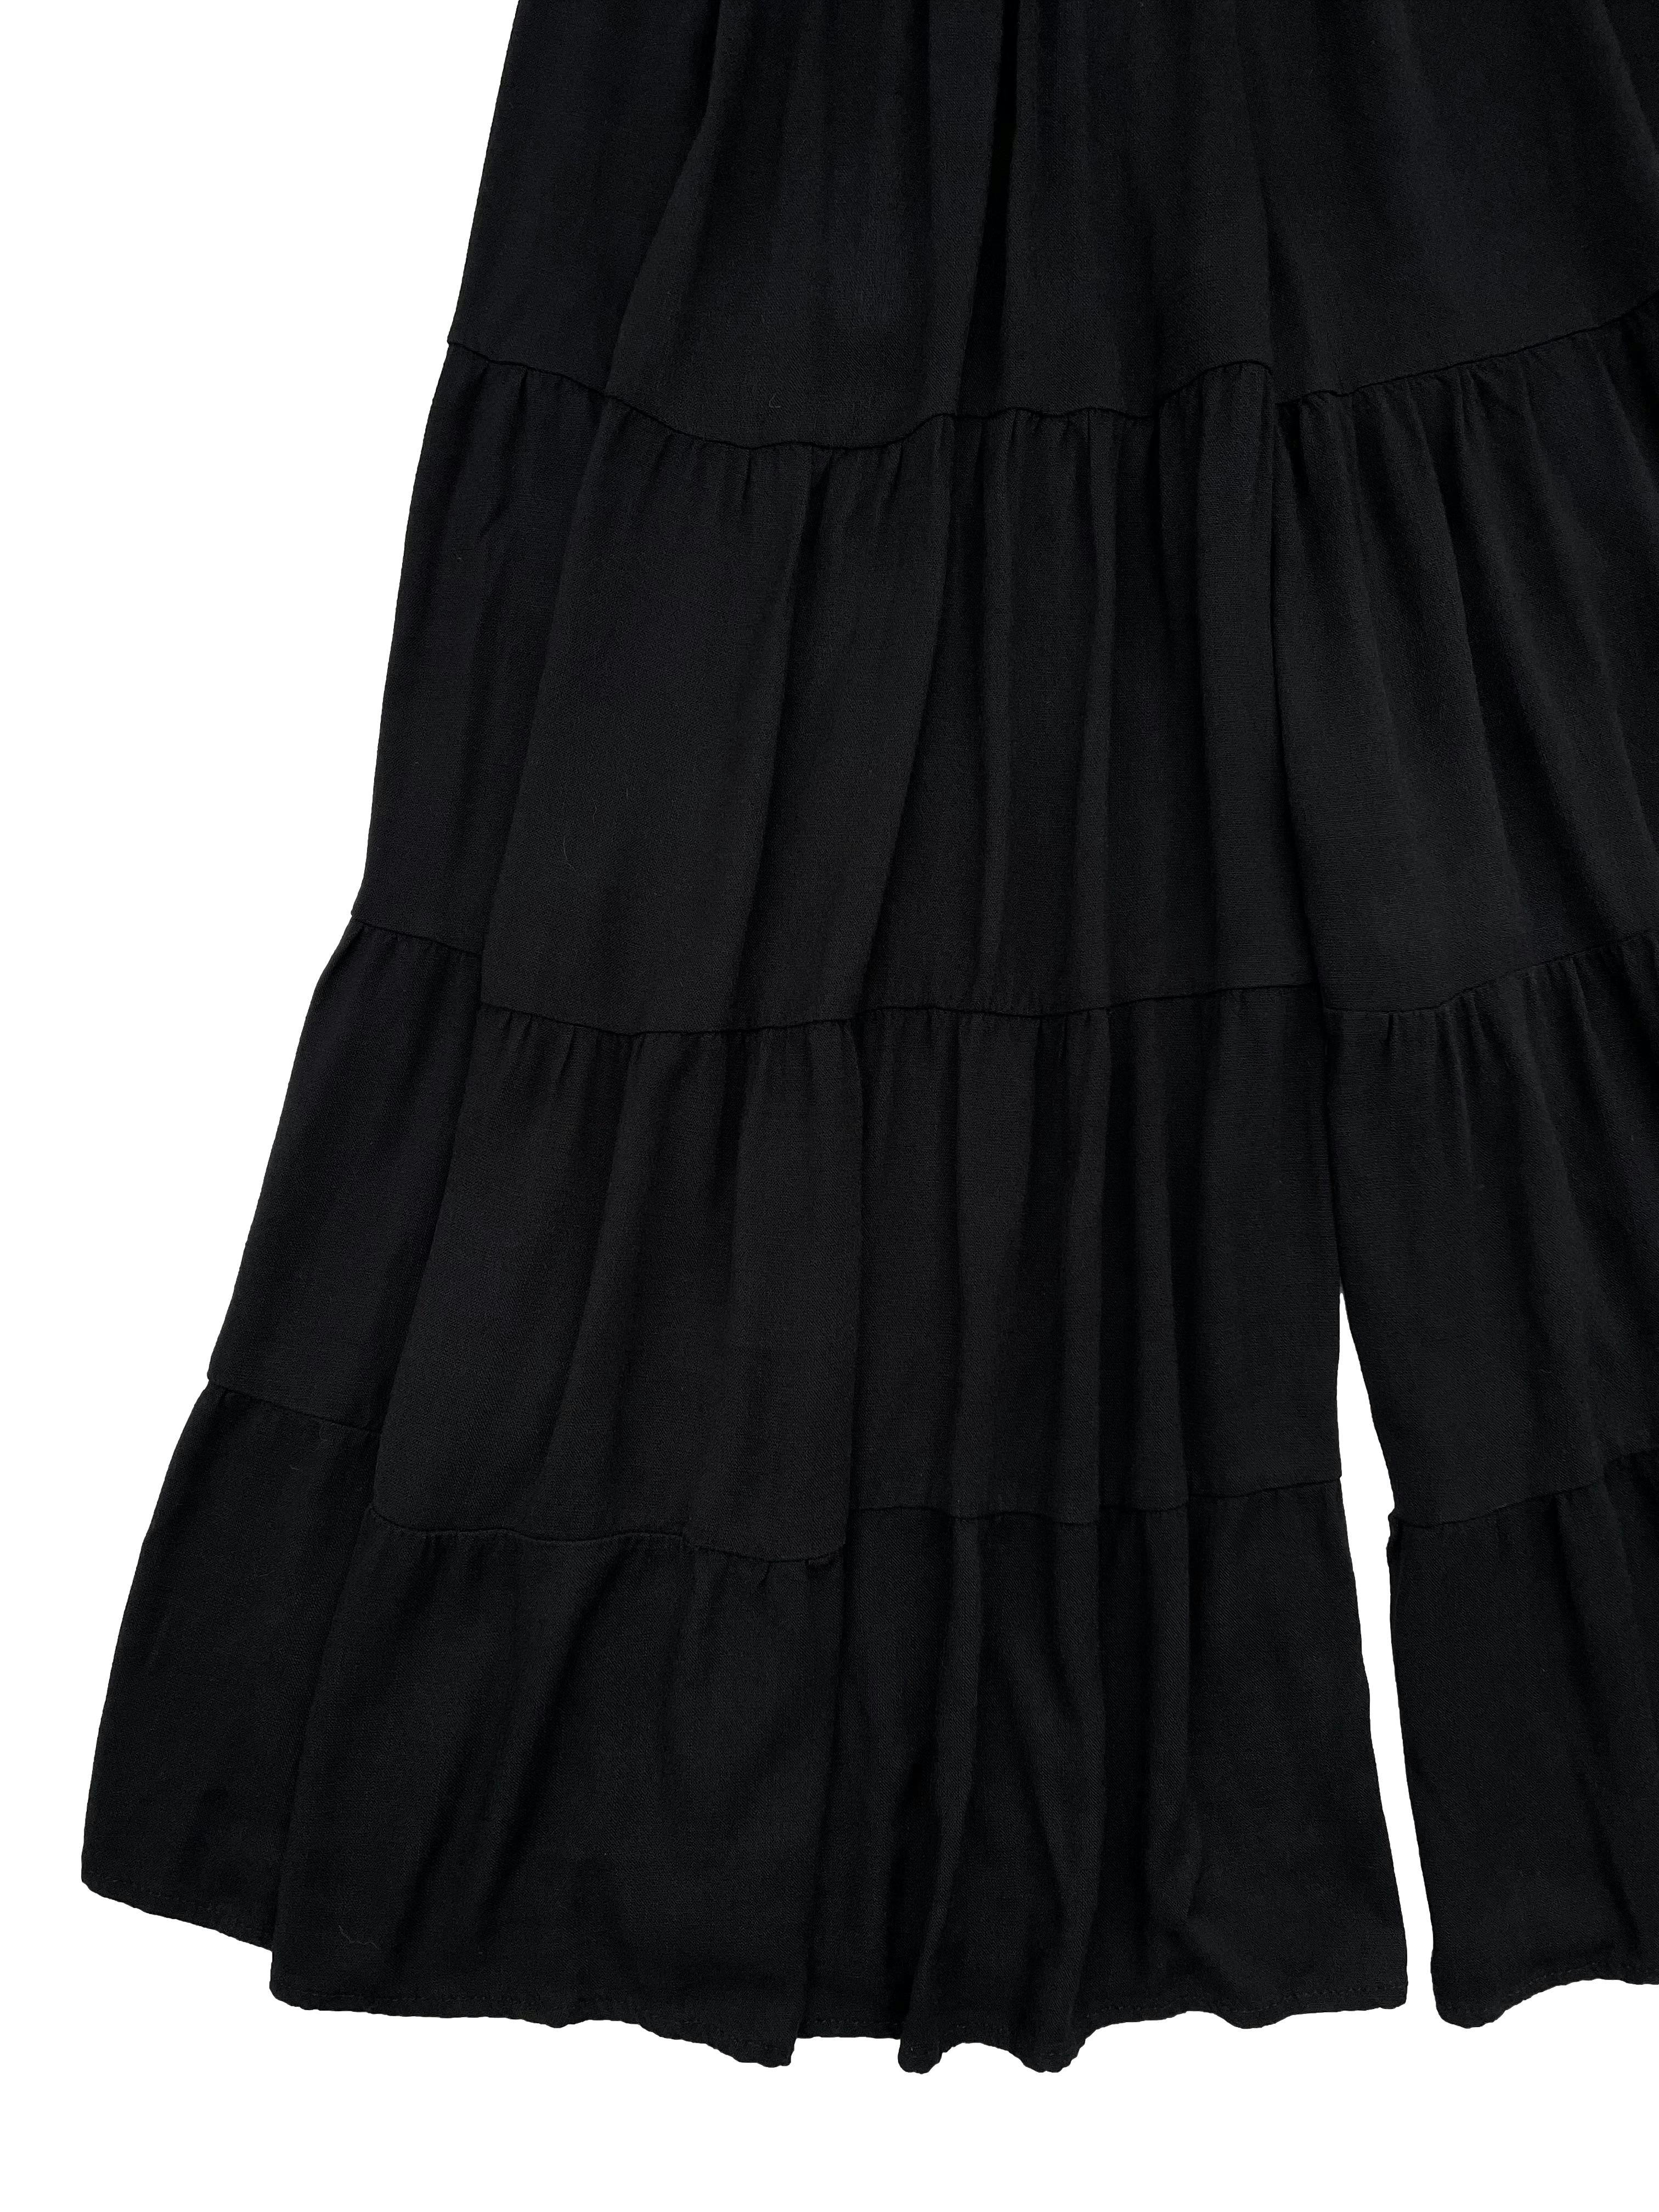 Pantalón culotte negro ADC, tela fresca, pretina elástica y piernas con paneles fruncidos. Cintura 60cm sin estirar, Largo 90cm.